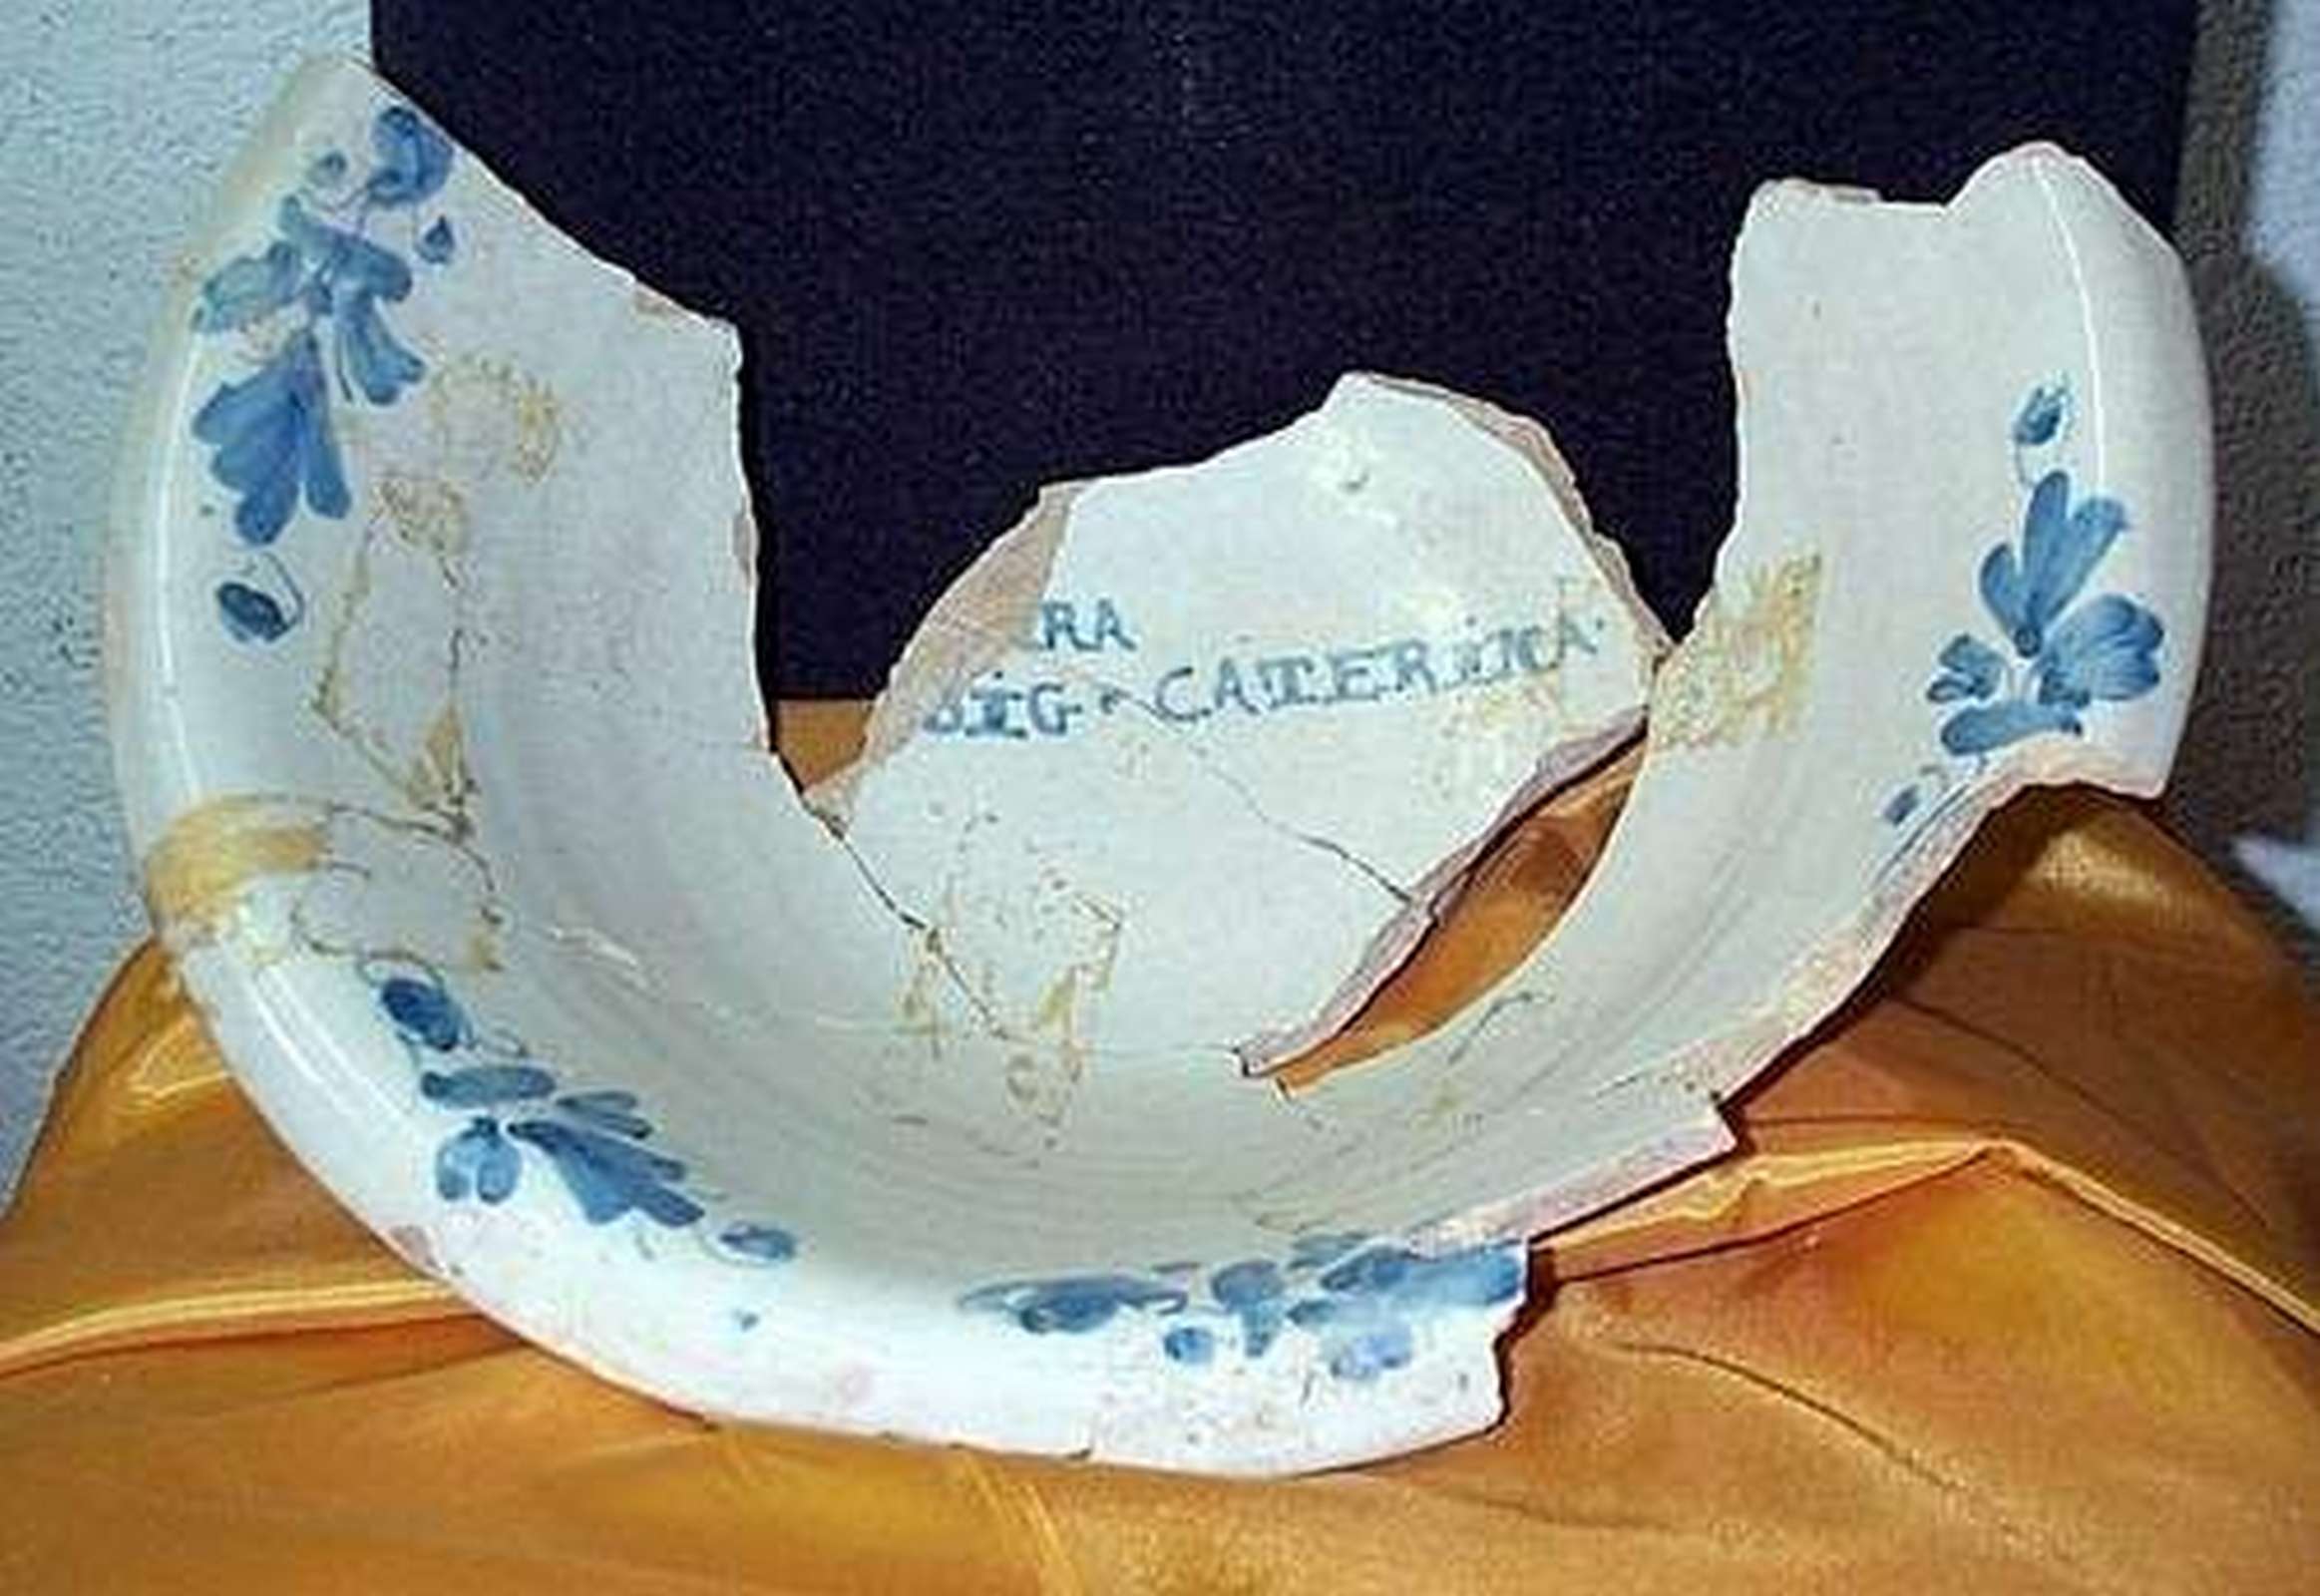 Antico frammento in maiolica - Ceramiche - Oggettistica - Prodotti - Antichità Fiorillo